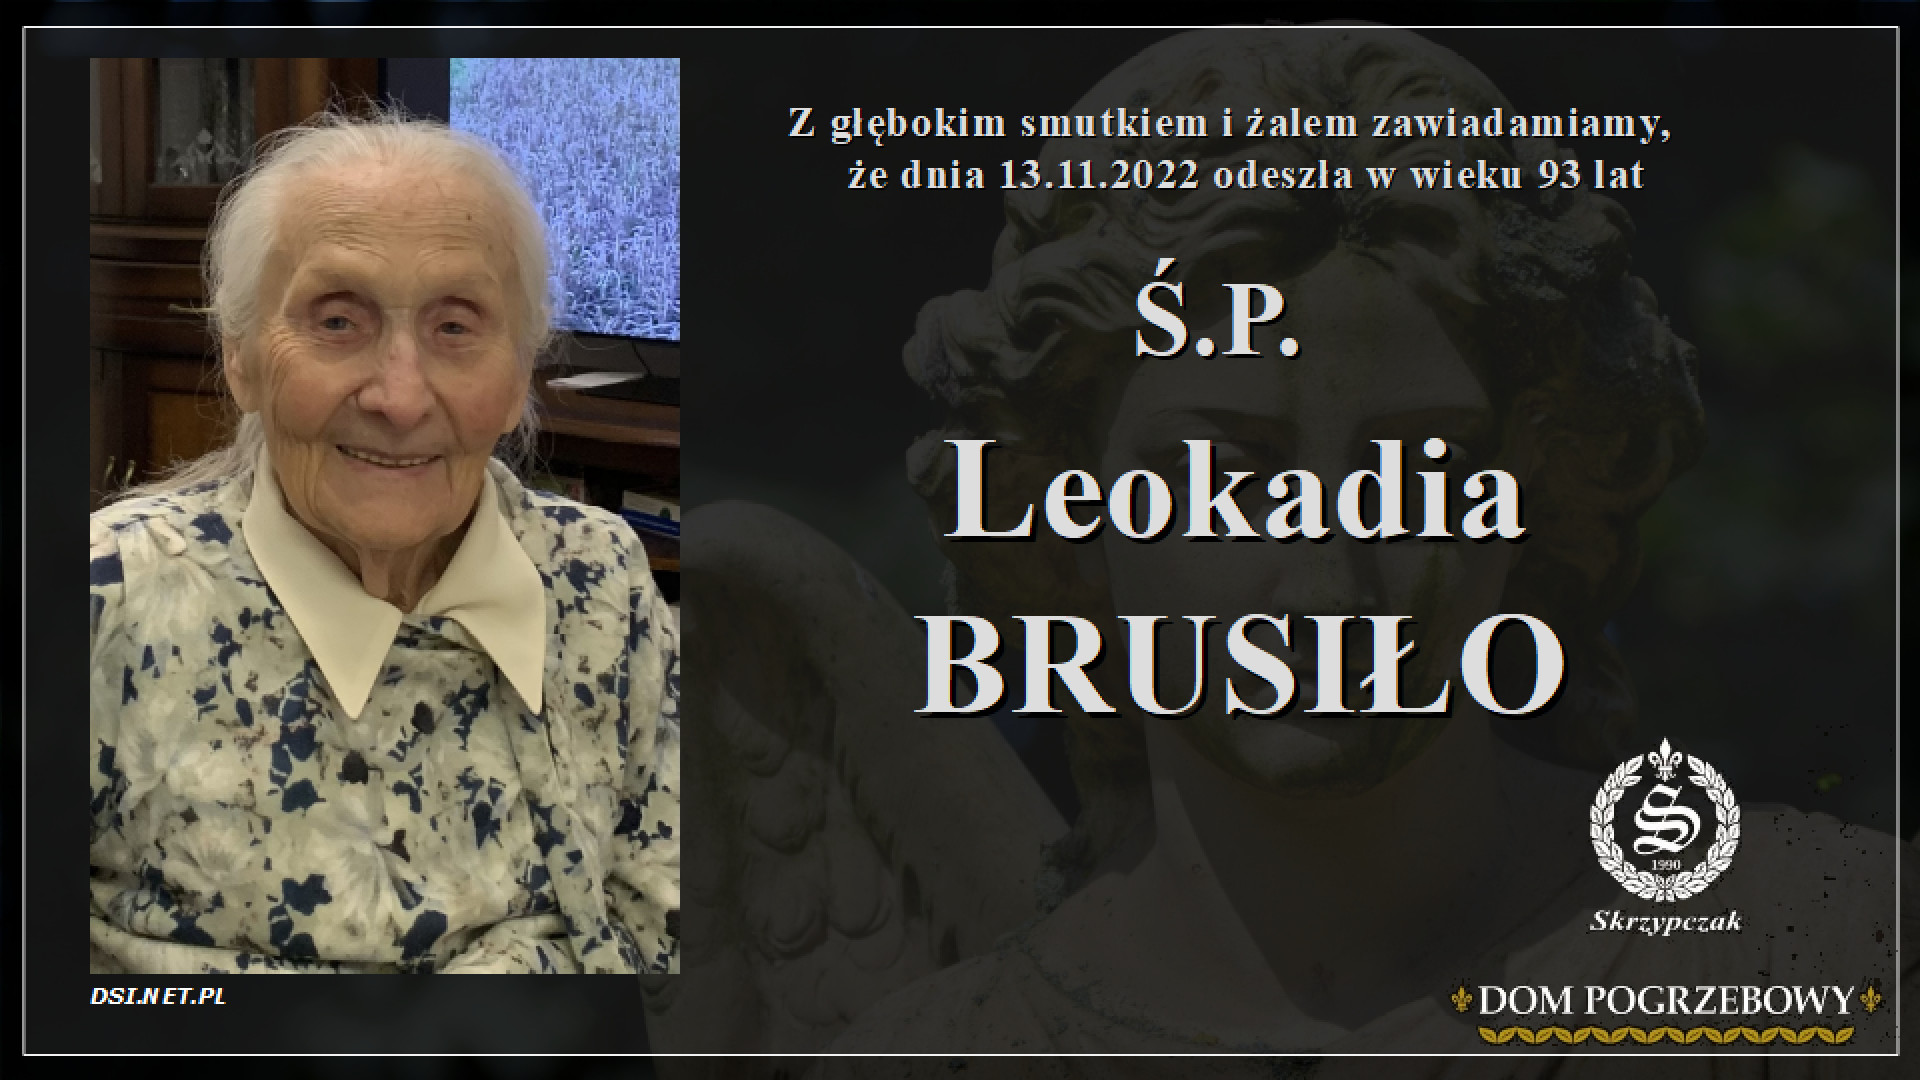 Ś.P. Leokadia Brusiło